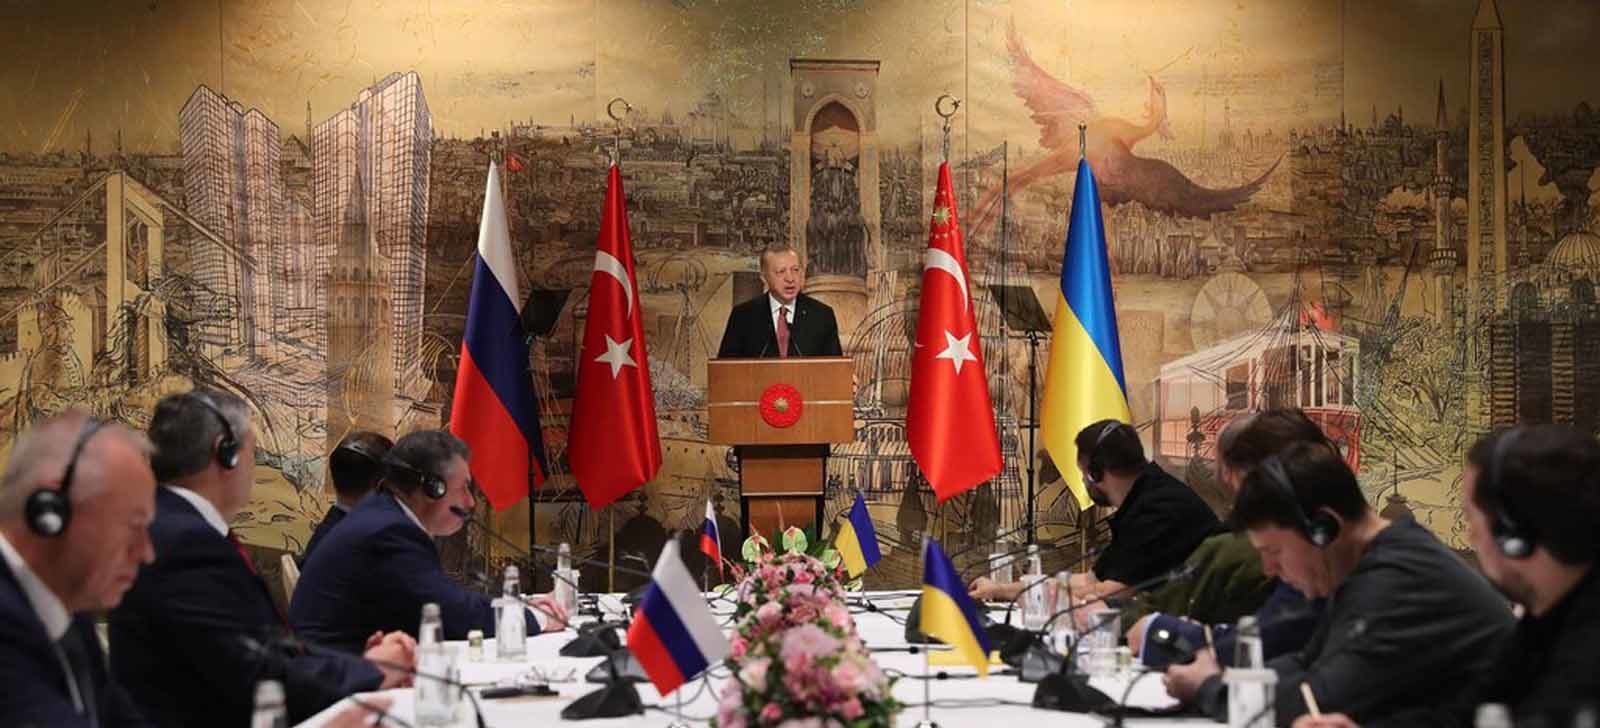 Il ruolo della Turchia nel conflitto tra Russia e Ucraina